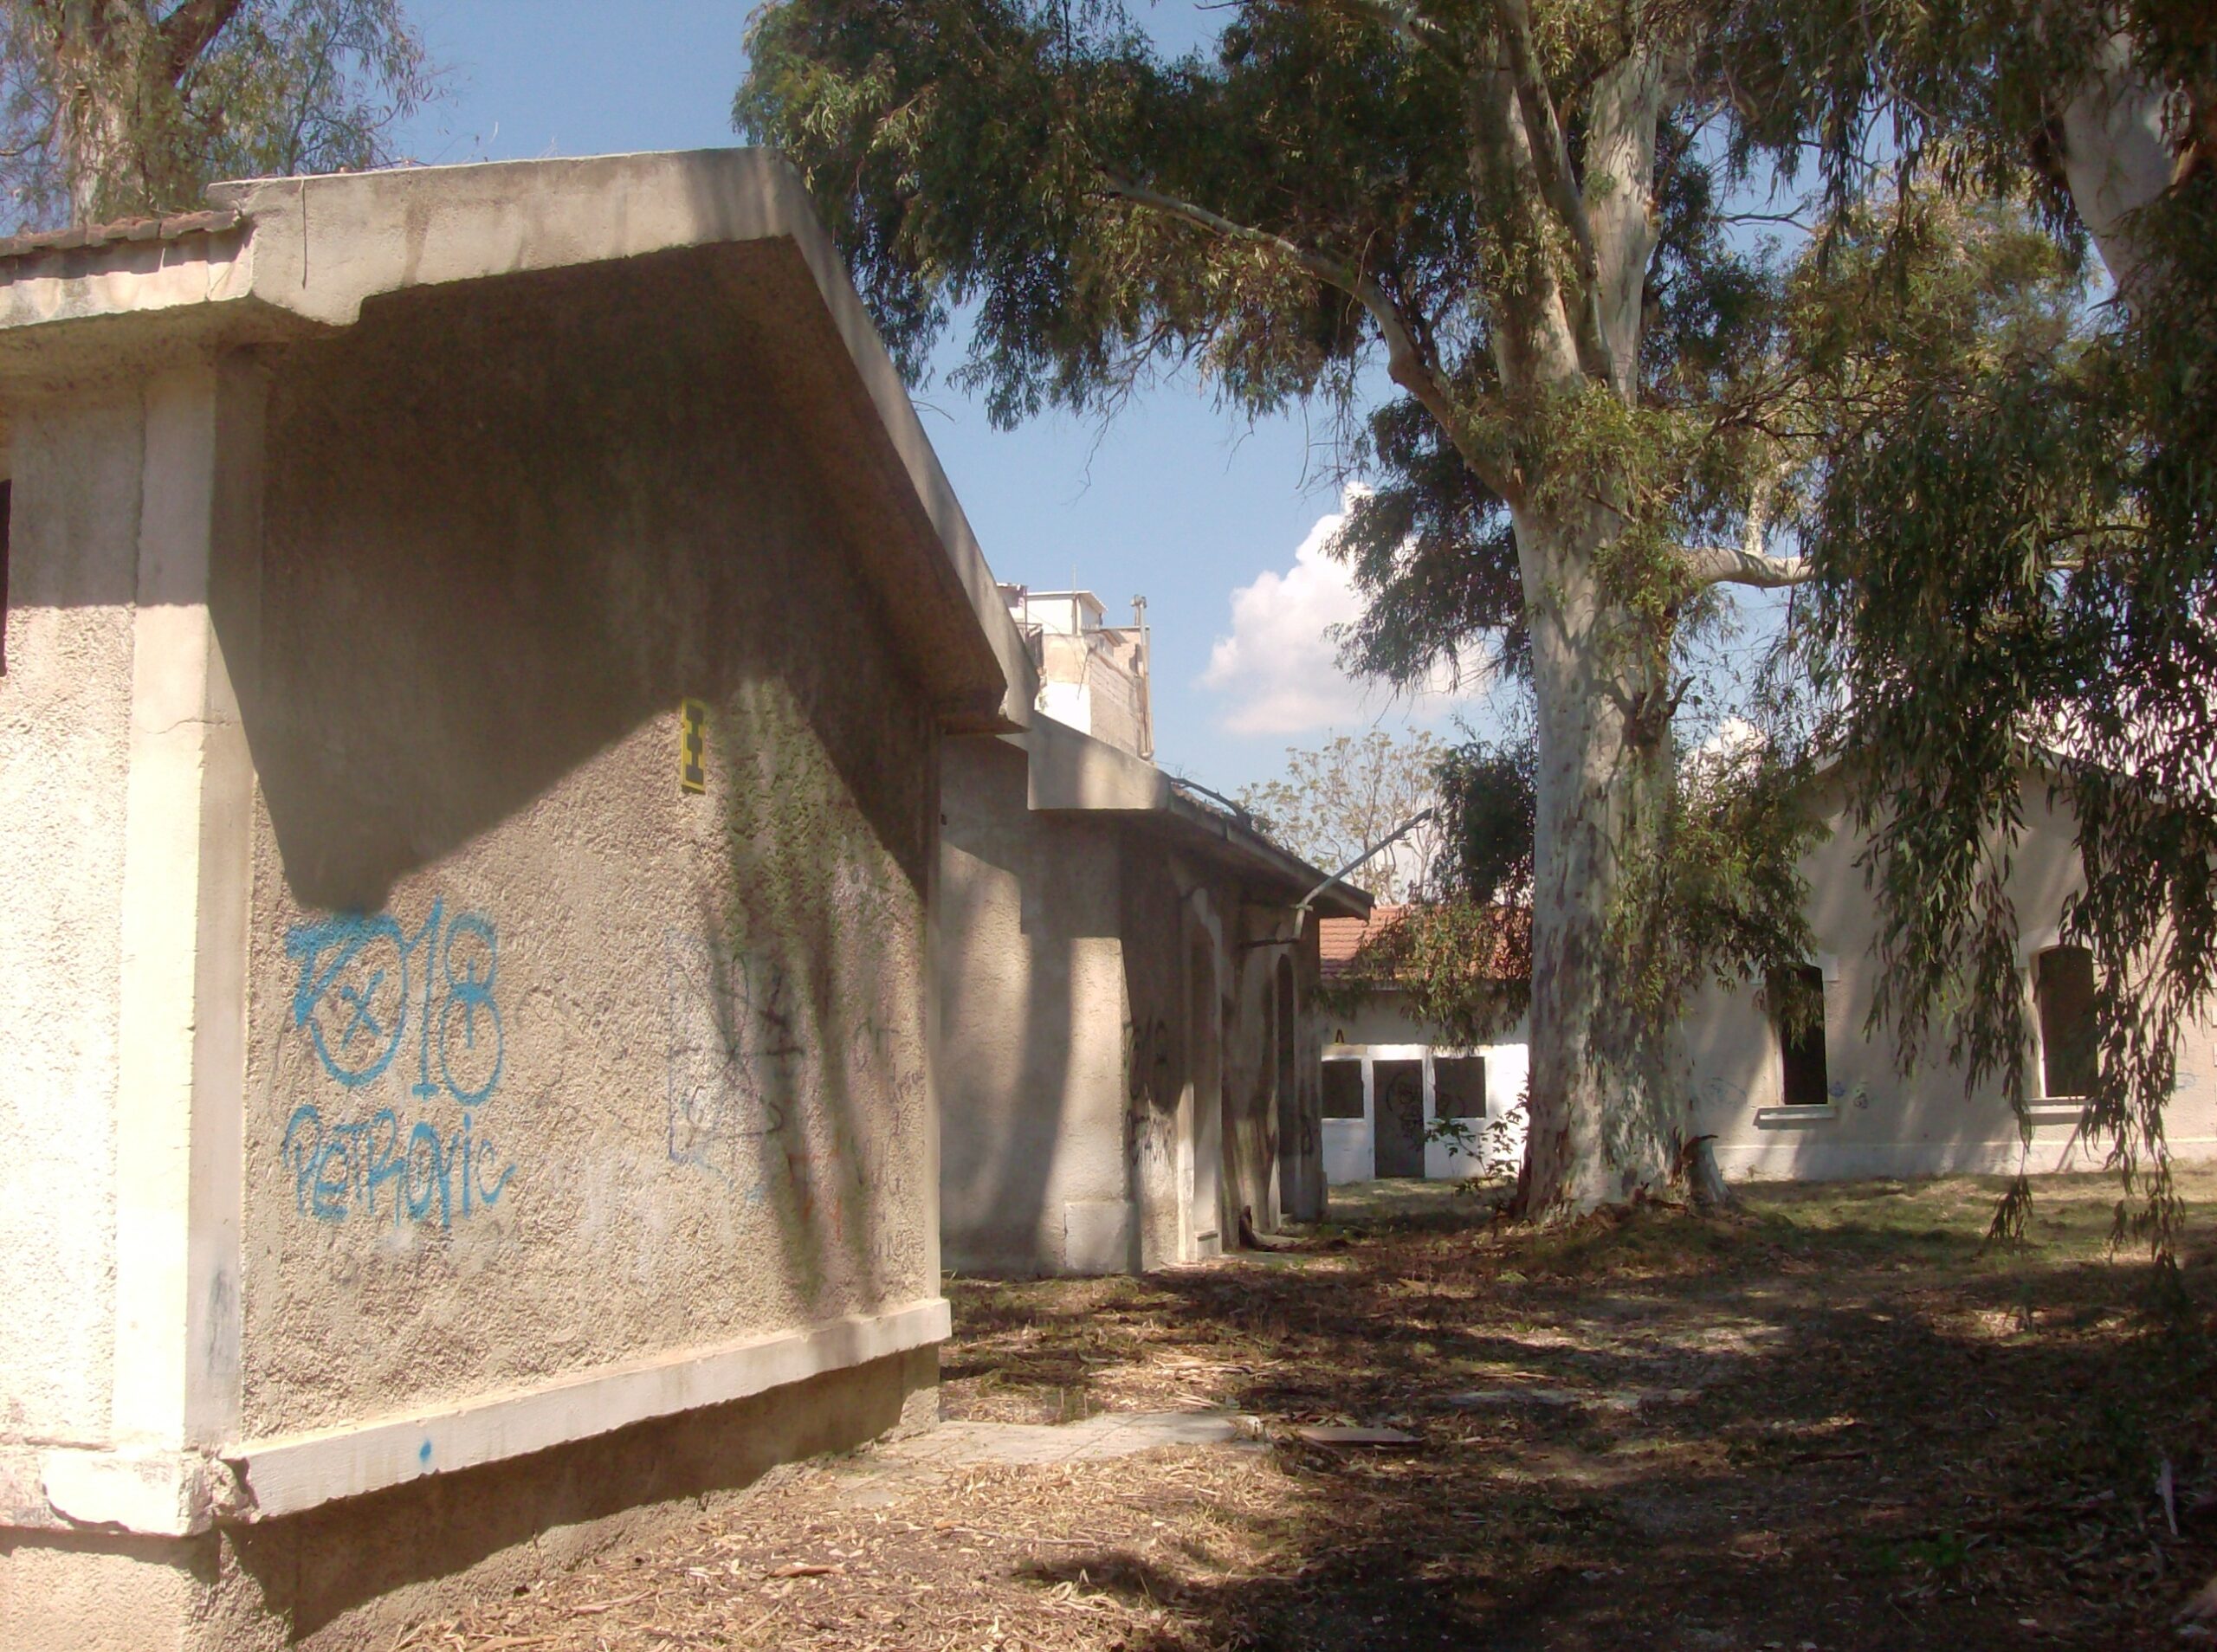 Το κολαστήριο της ΕΣΑ στον Πειραιά αναδεικνύεται σε χώρο ιστορικής μνήμης (φωτορεπορτάζ)